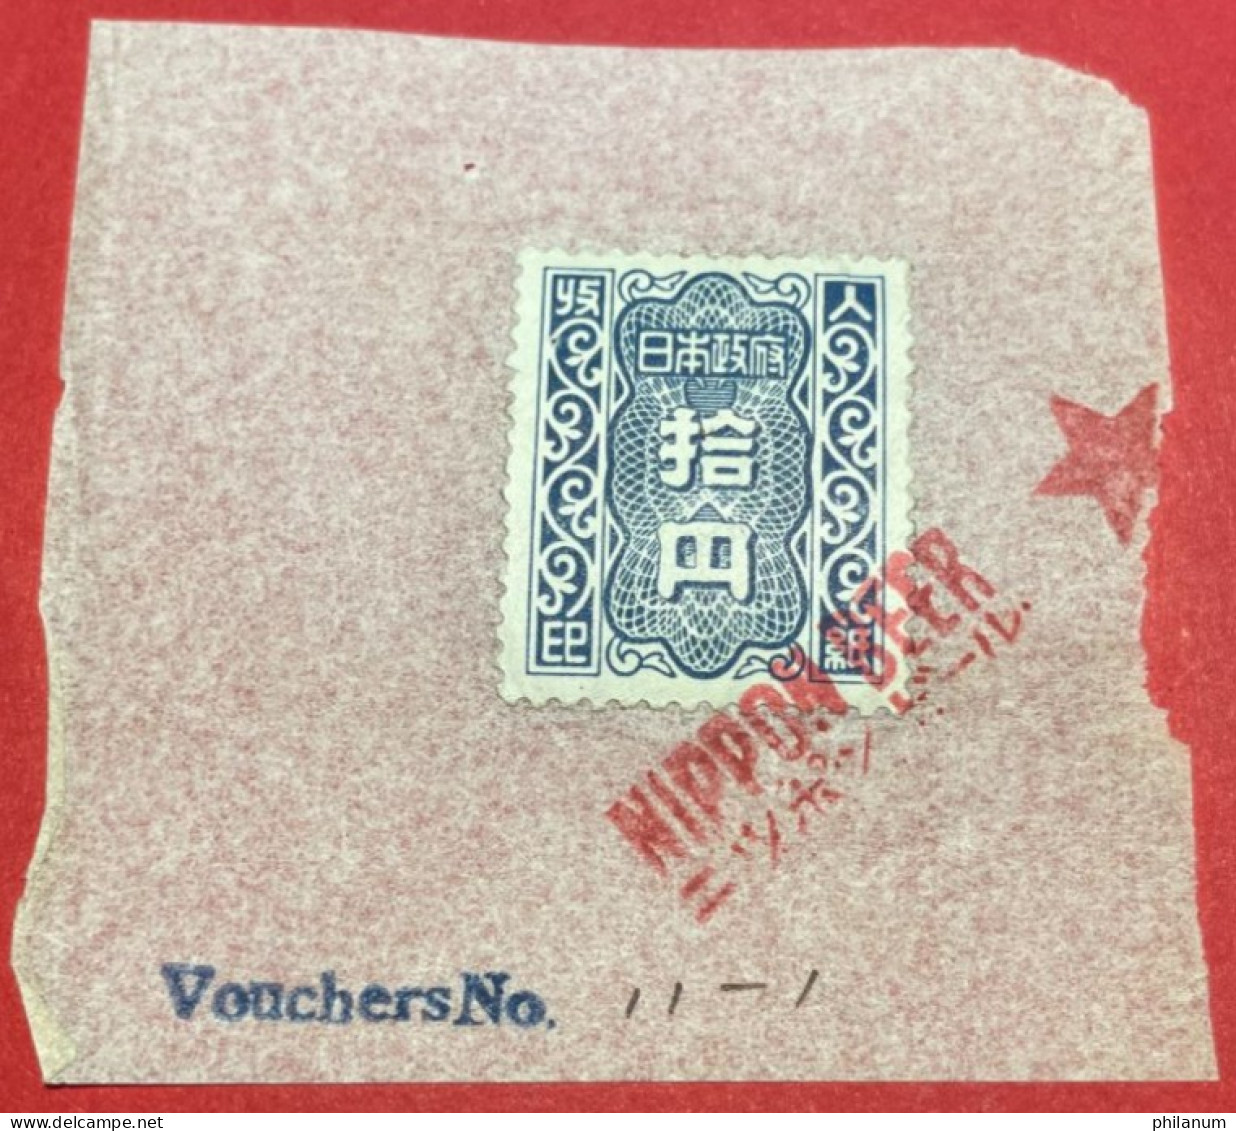 GIAPPONE 1946-1957 - #1 - MARCA DA BOLLO 100 YEN - SHOWAGIAPPONE 1946-1957 - #1 - MARCA DA BOLLO 100 YEN - SHOWA - Covers & Documents